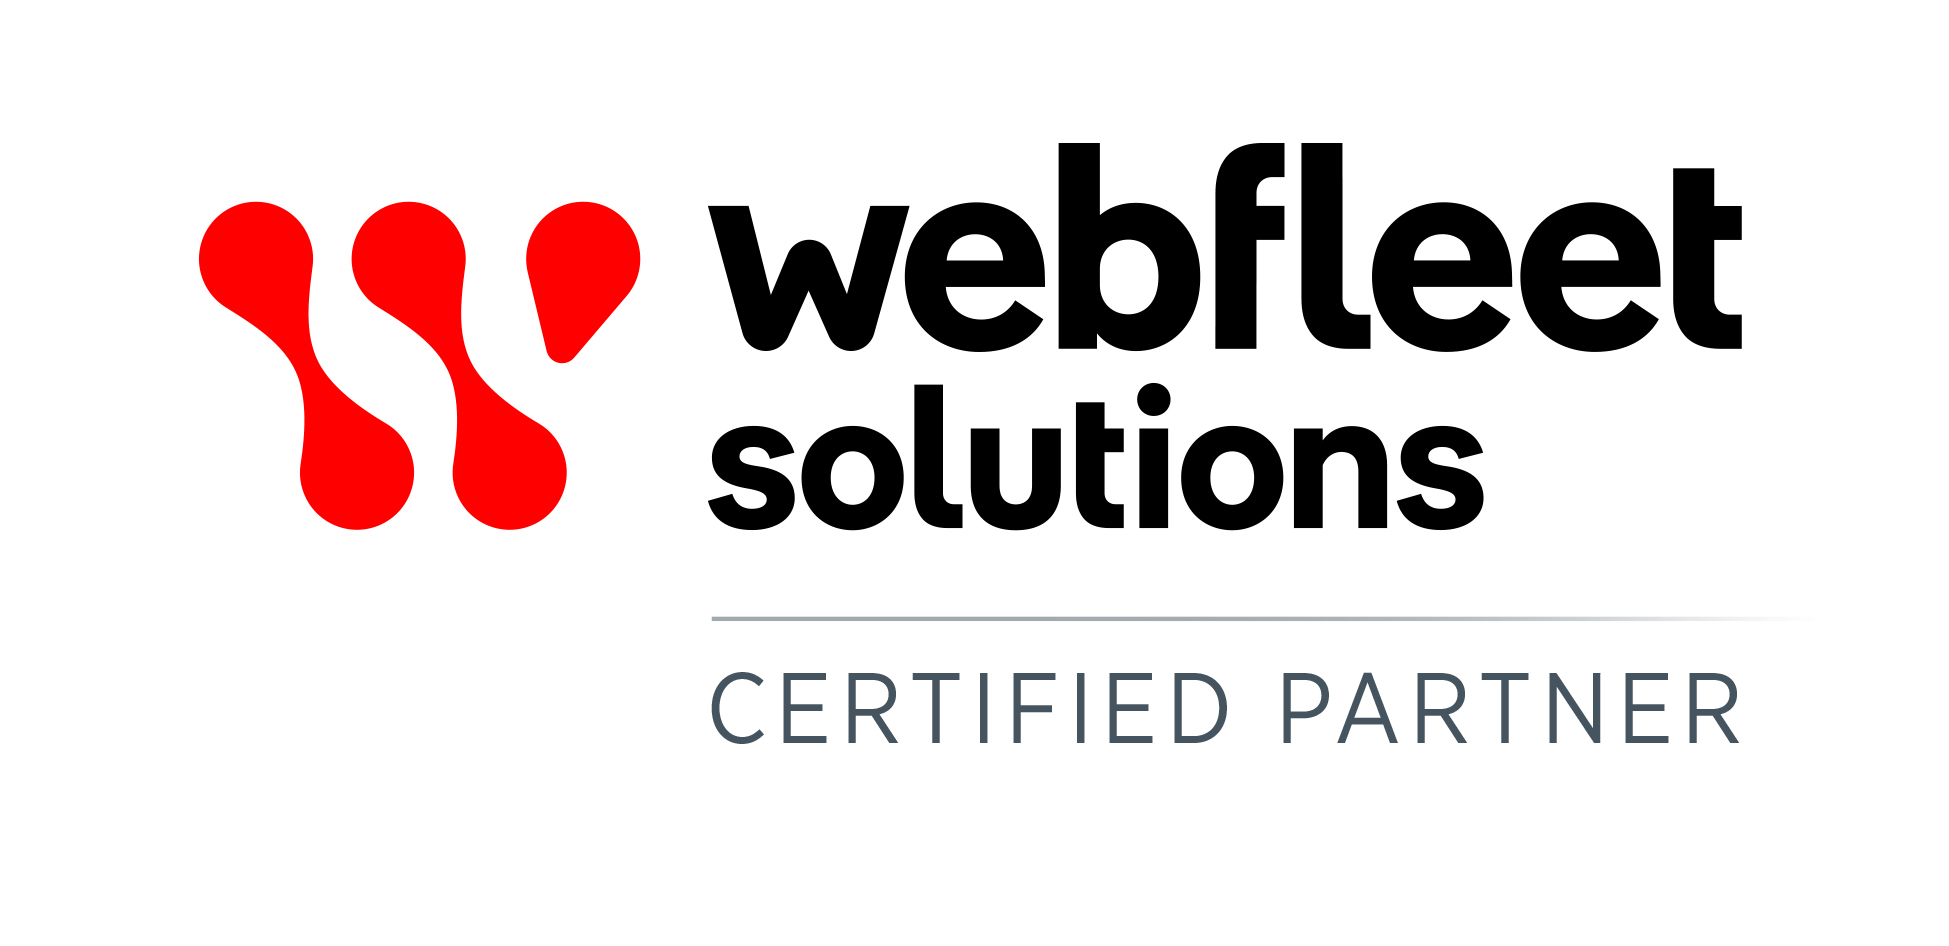 Webfleet Solutions